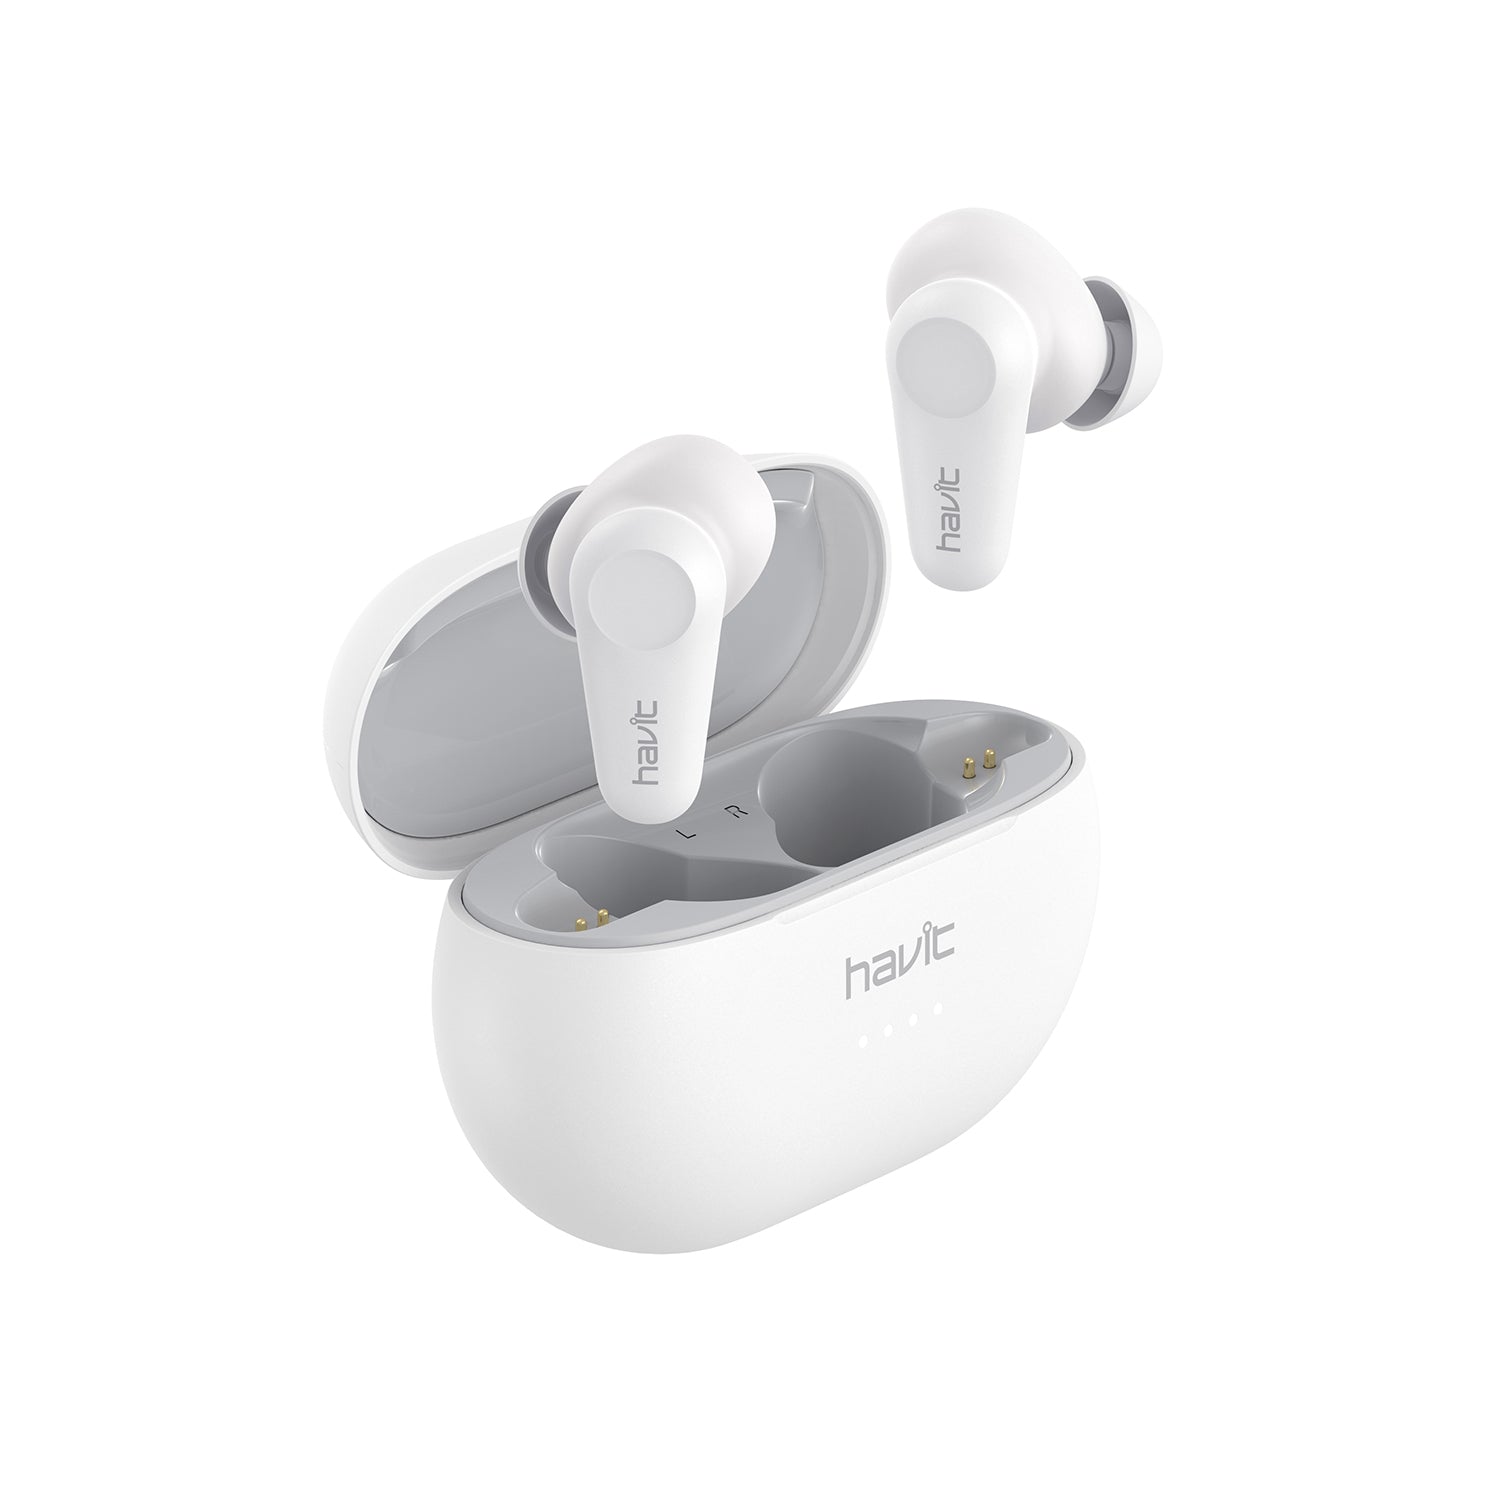 HAVIT TW915 ANC True Wireless Earbuds, con cancelación activa de ruido y 3 modos de reproducción